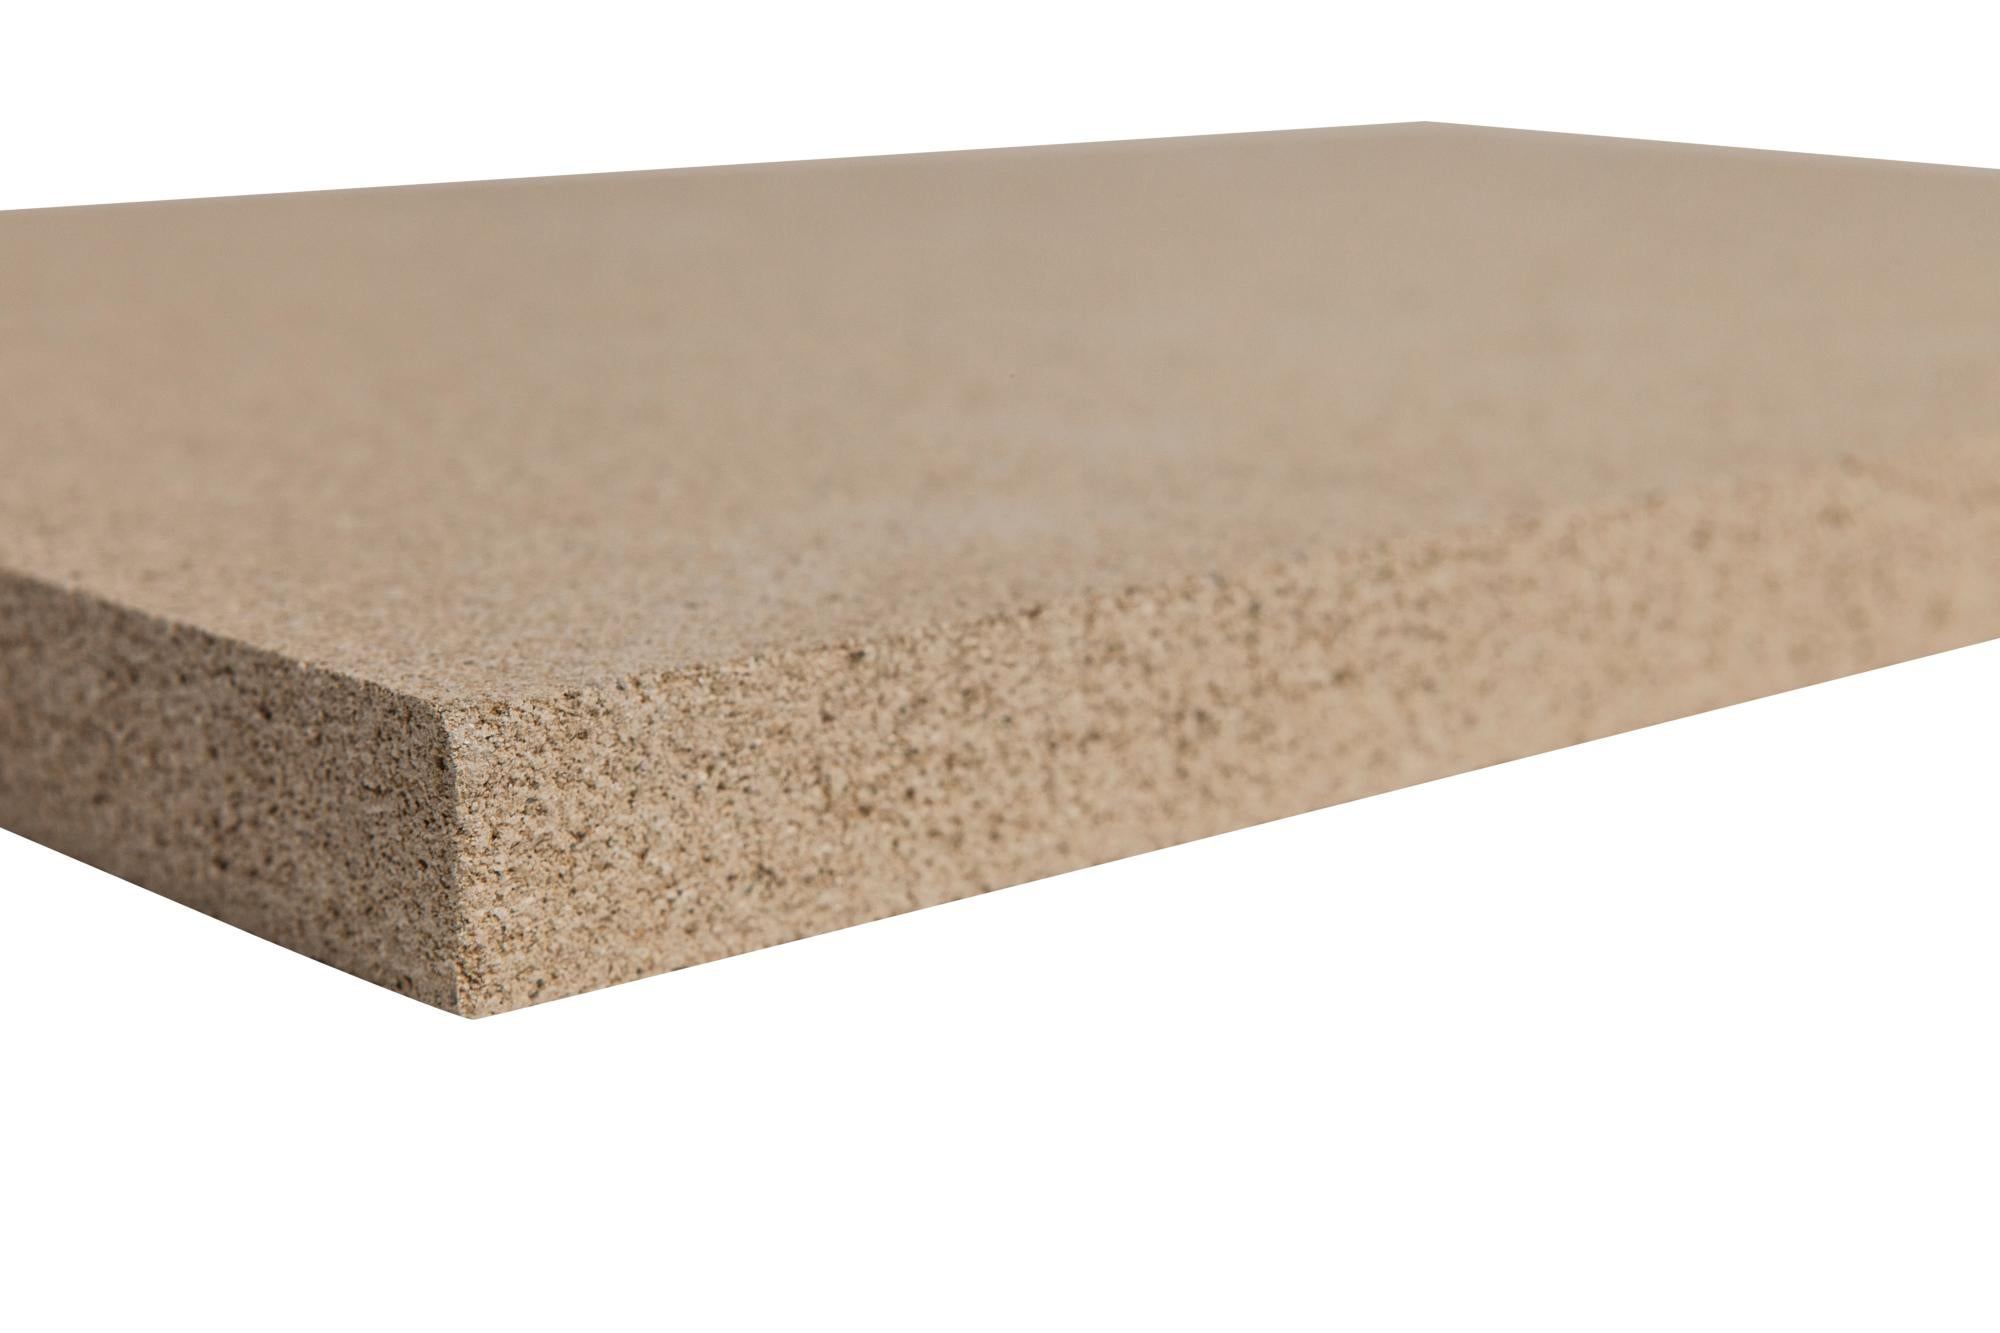 Plaque de vermiculite 500 x 600 mm 25 mm d'épaisseur 3 plaques pour foyer :  : Bricolage